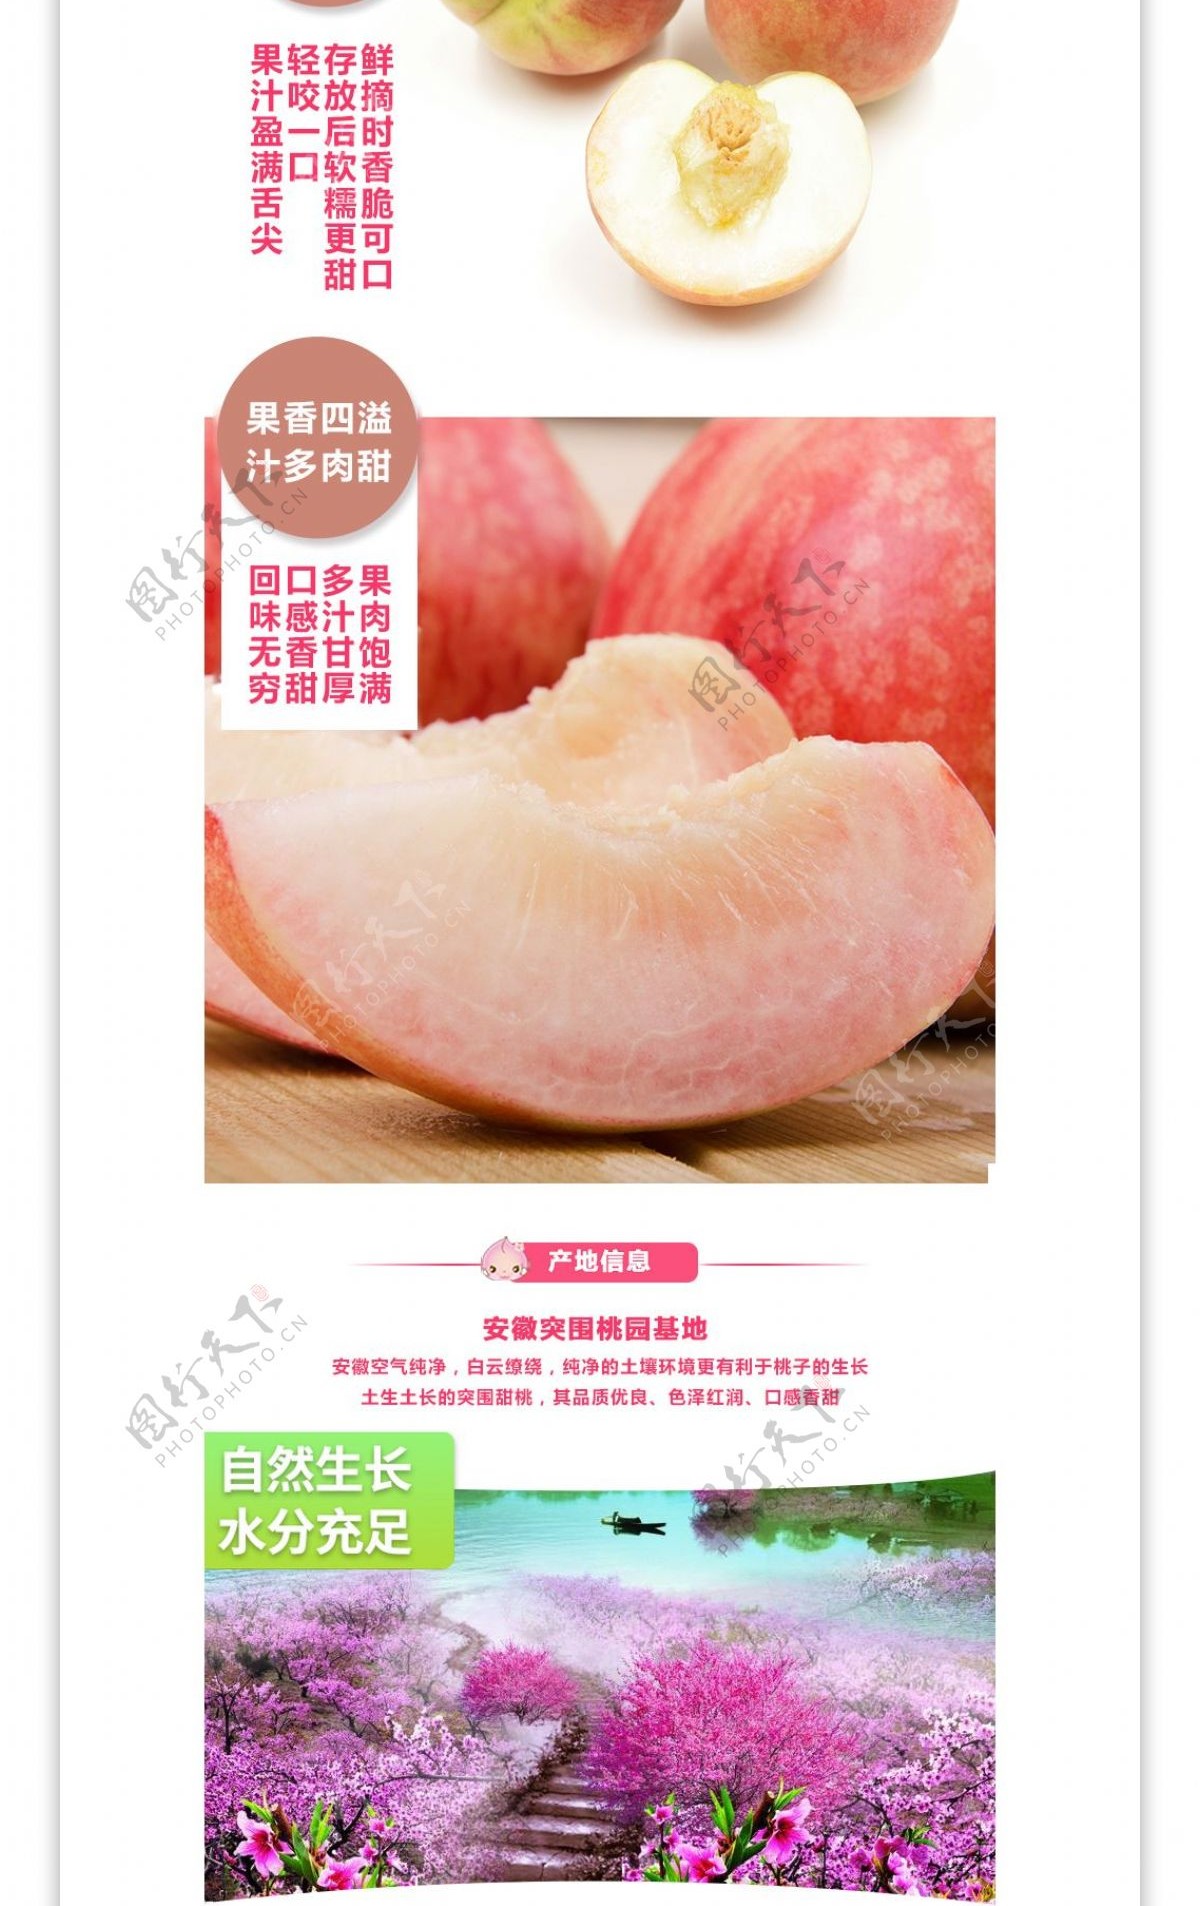 夏季突围甜桃国产新鲜水果桃子详情页模版